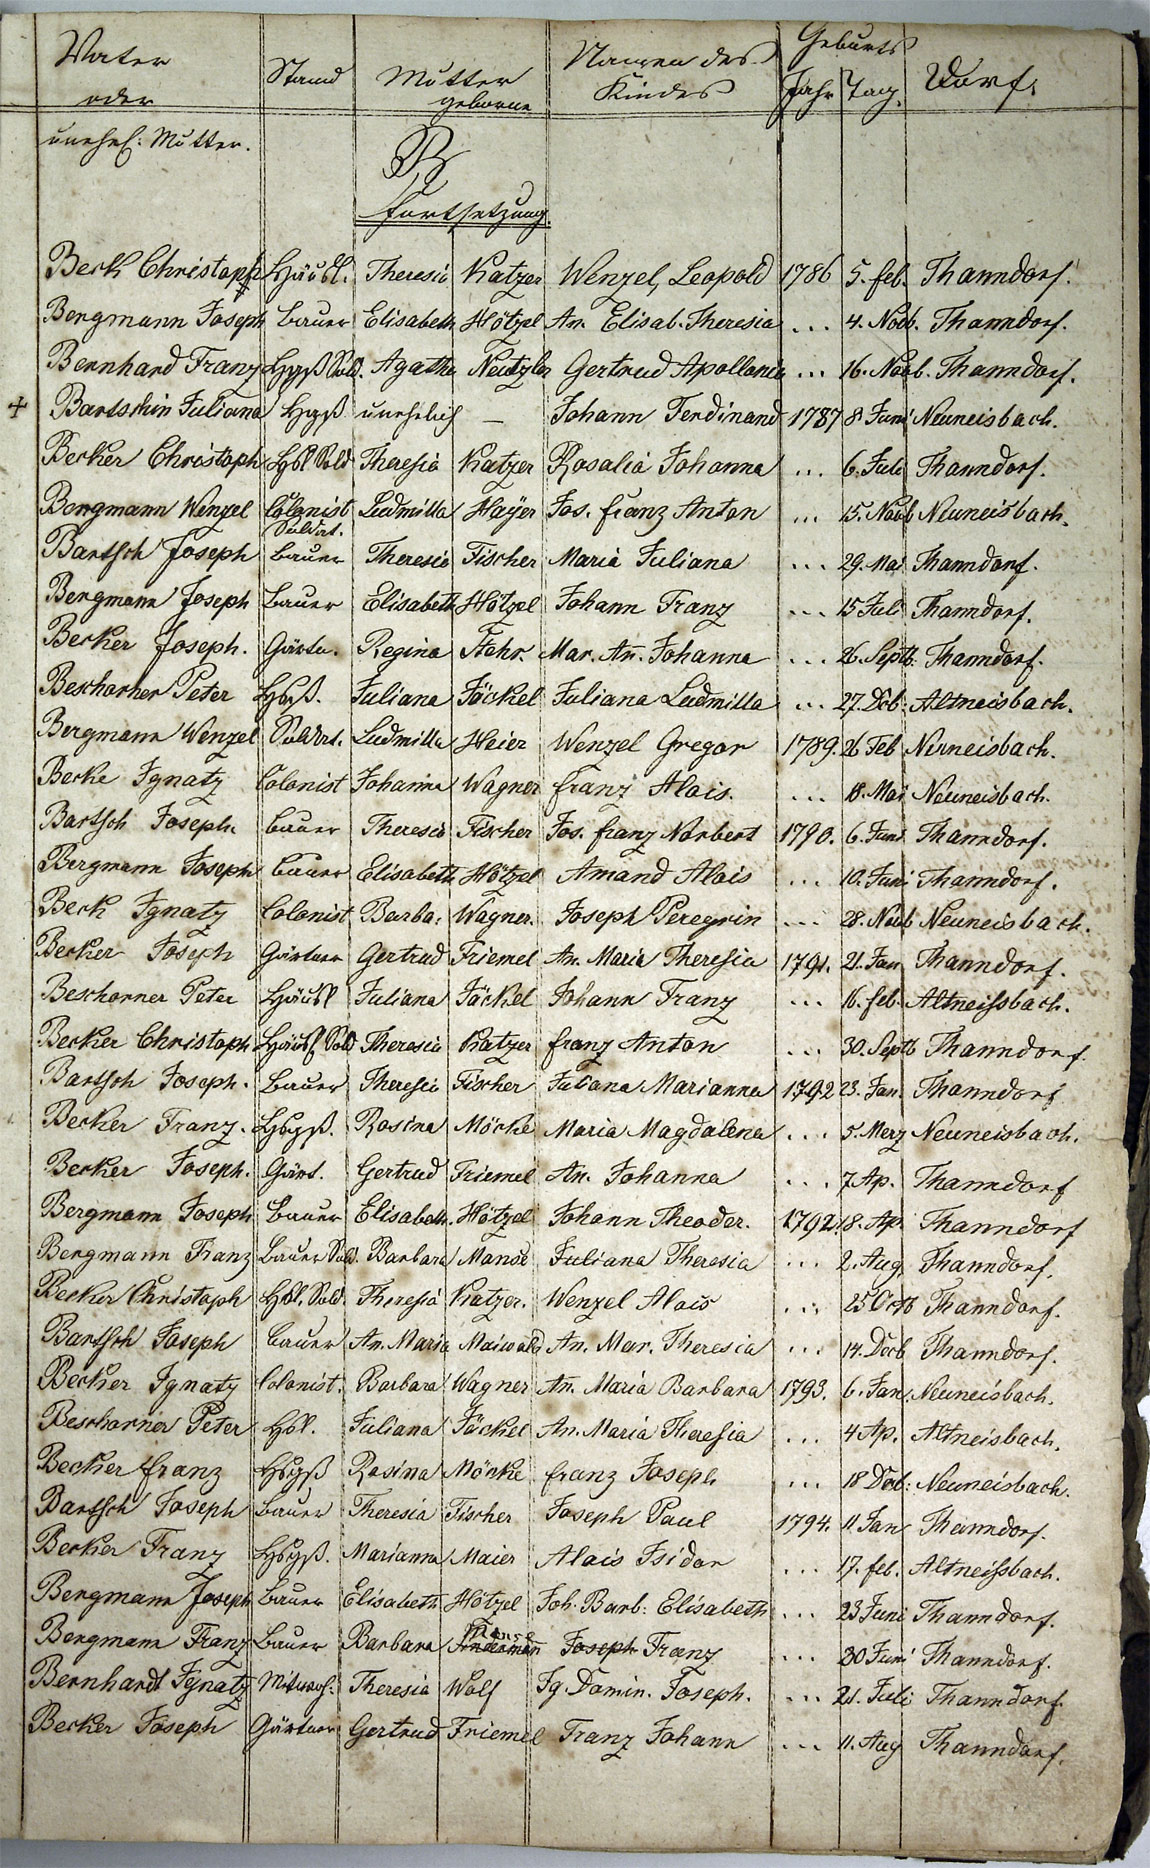 Taufregister 1770 - 1889 Seite 3